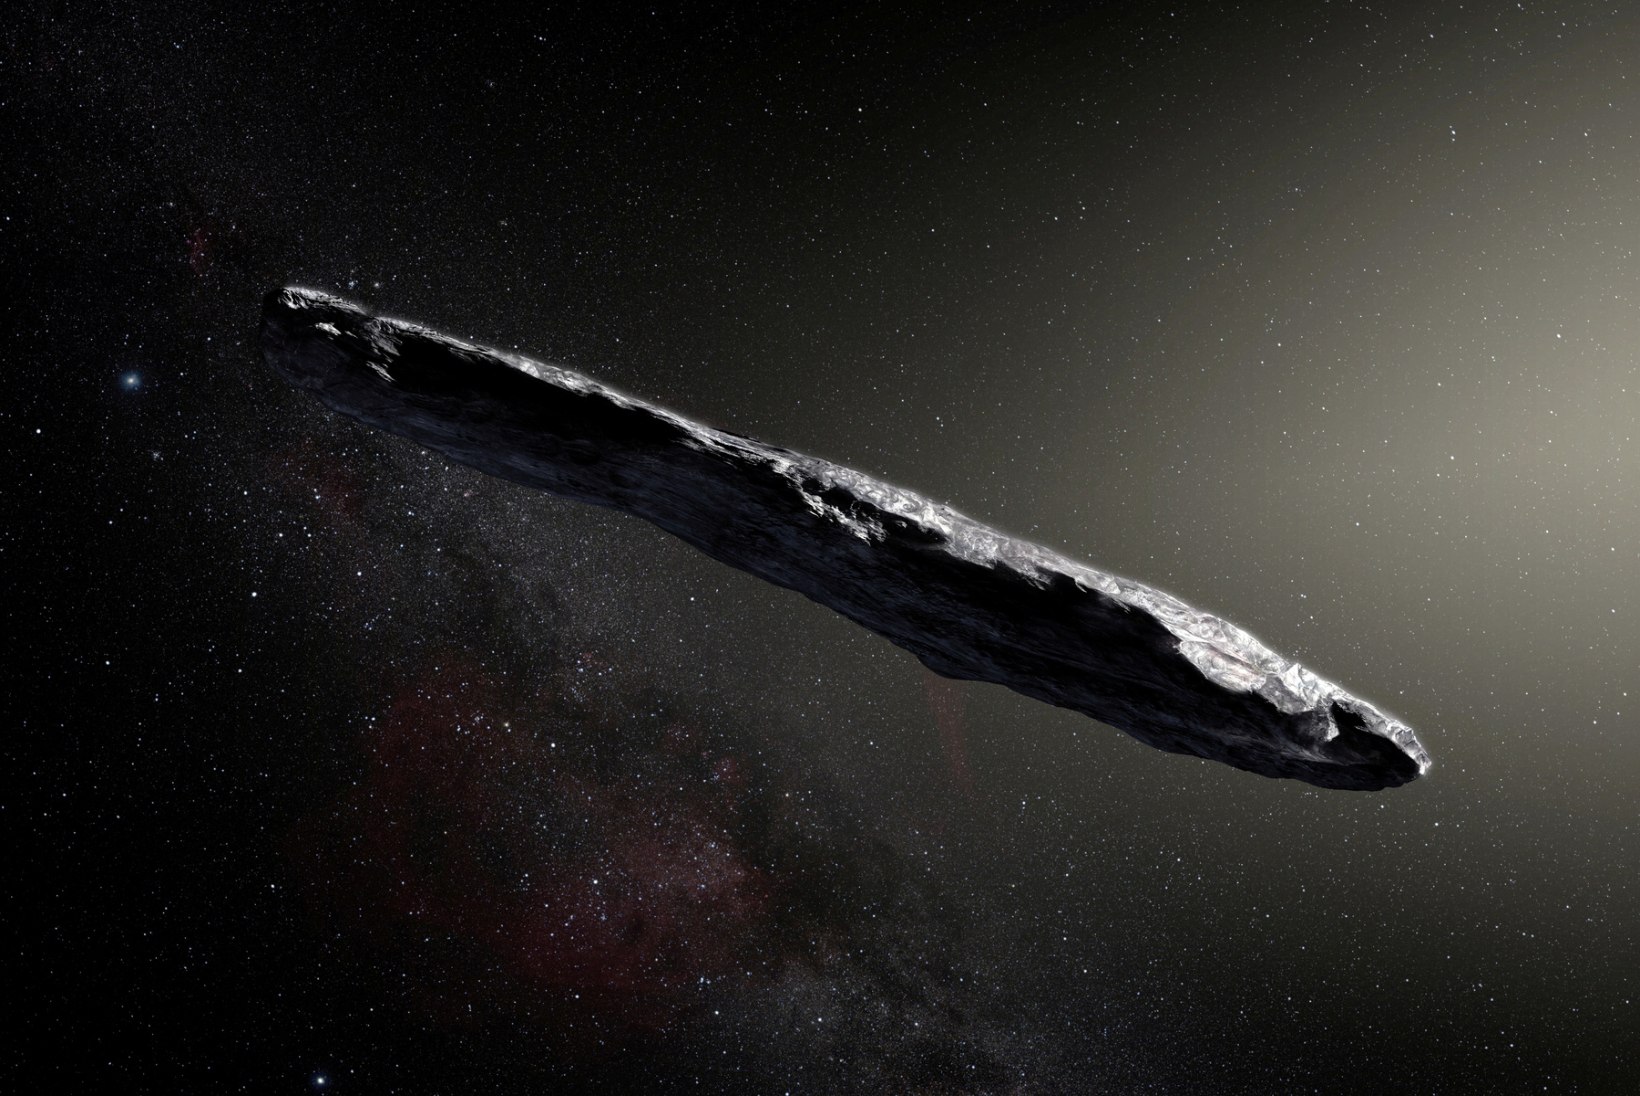 IGOR VOLKE X-TOIMIKUD | Harvardi tippteadlane: Oumamua oli ilmselt tulnukatsivilisatsiooni lennuriist